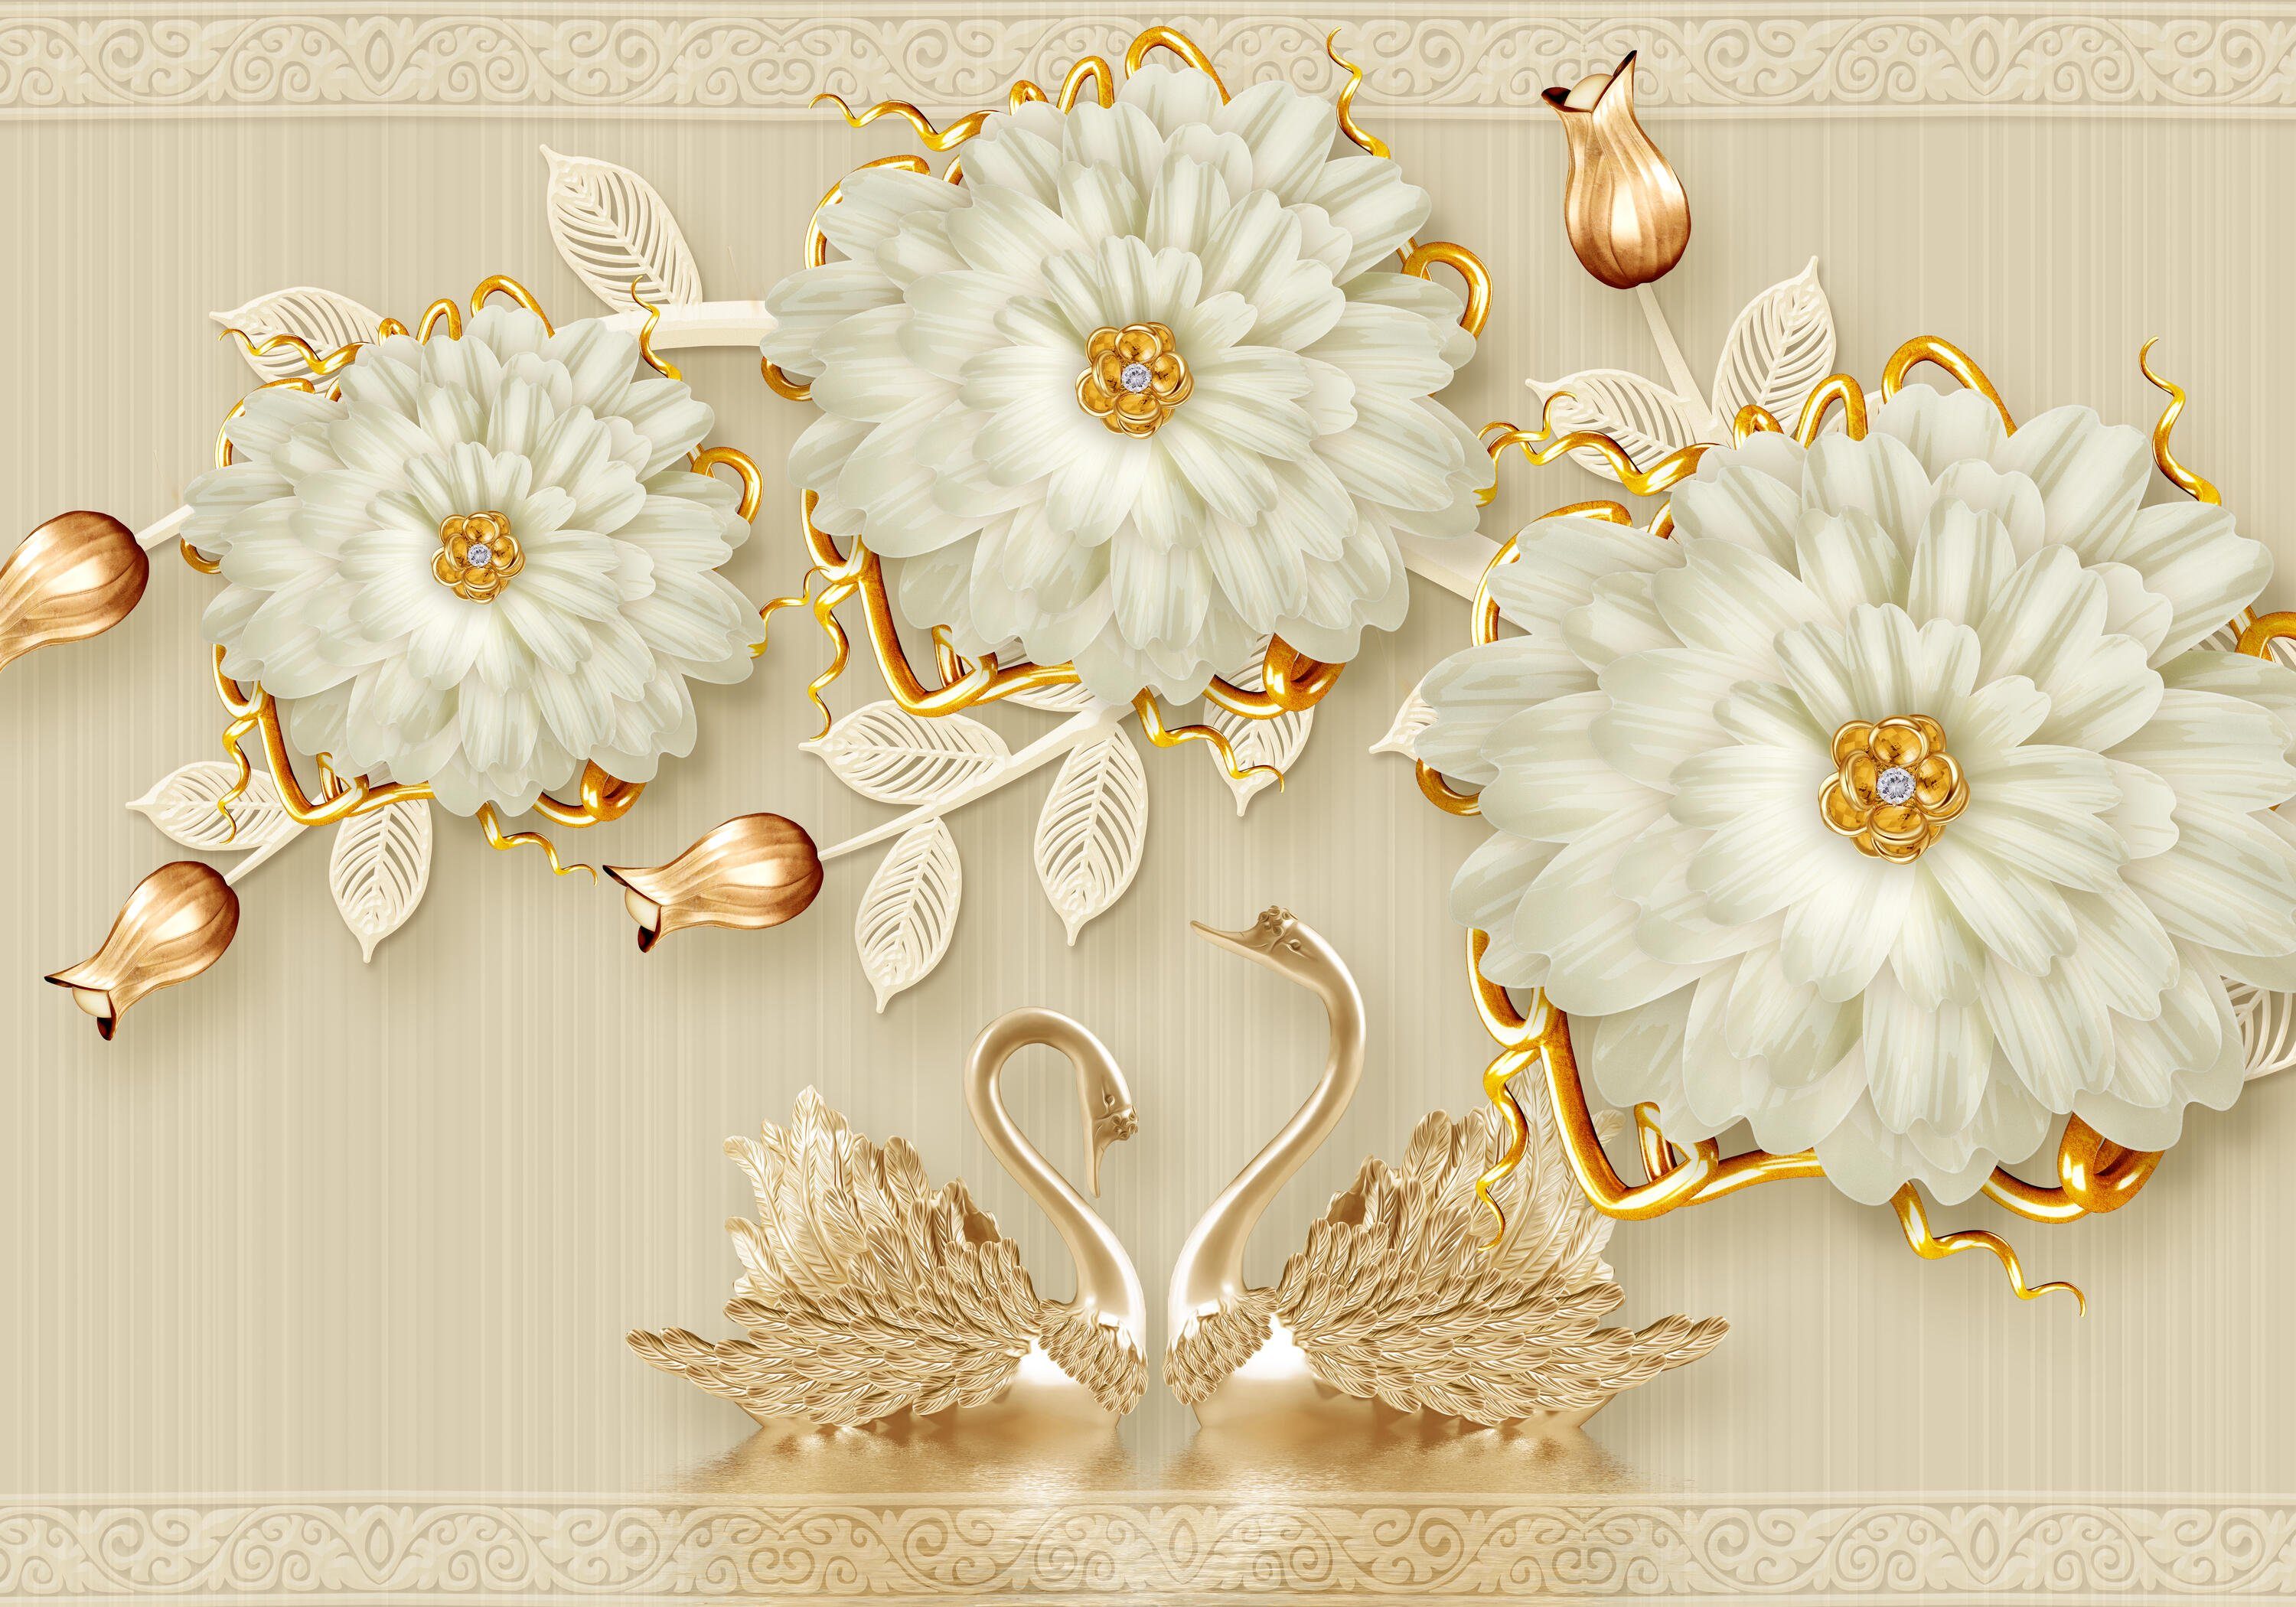 wandmotiv24 Fototapete Blüten Ornamente gold weiß, glatt, Wandtapete, Motivtapete, matt, Vliestapete